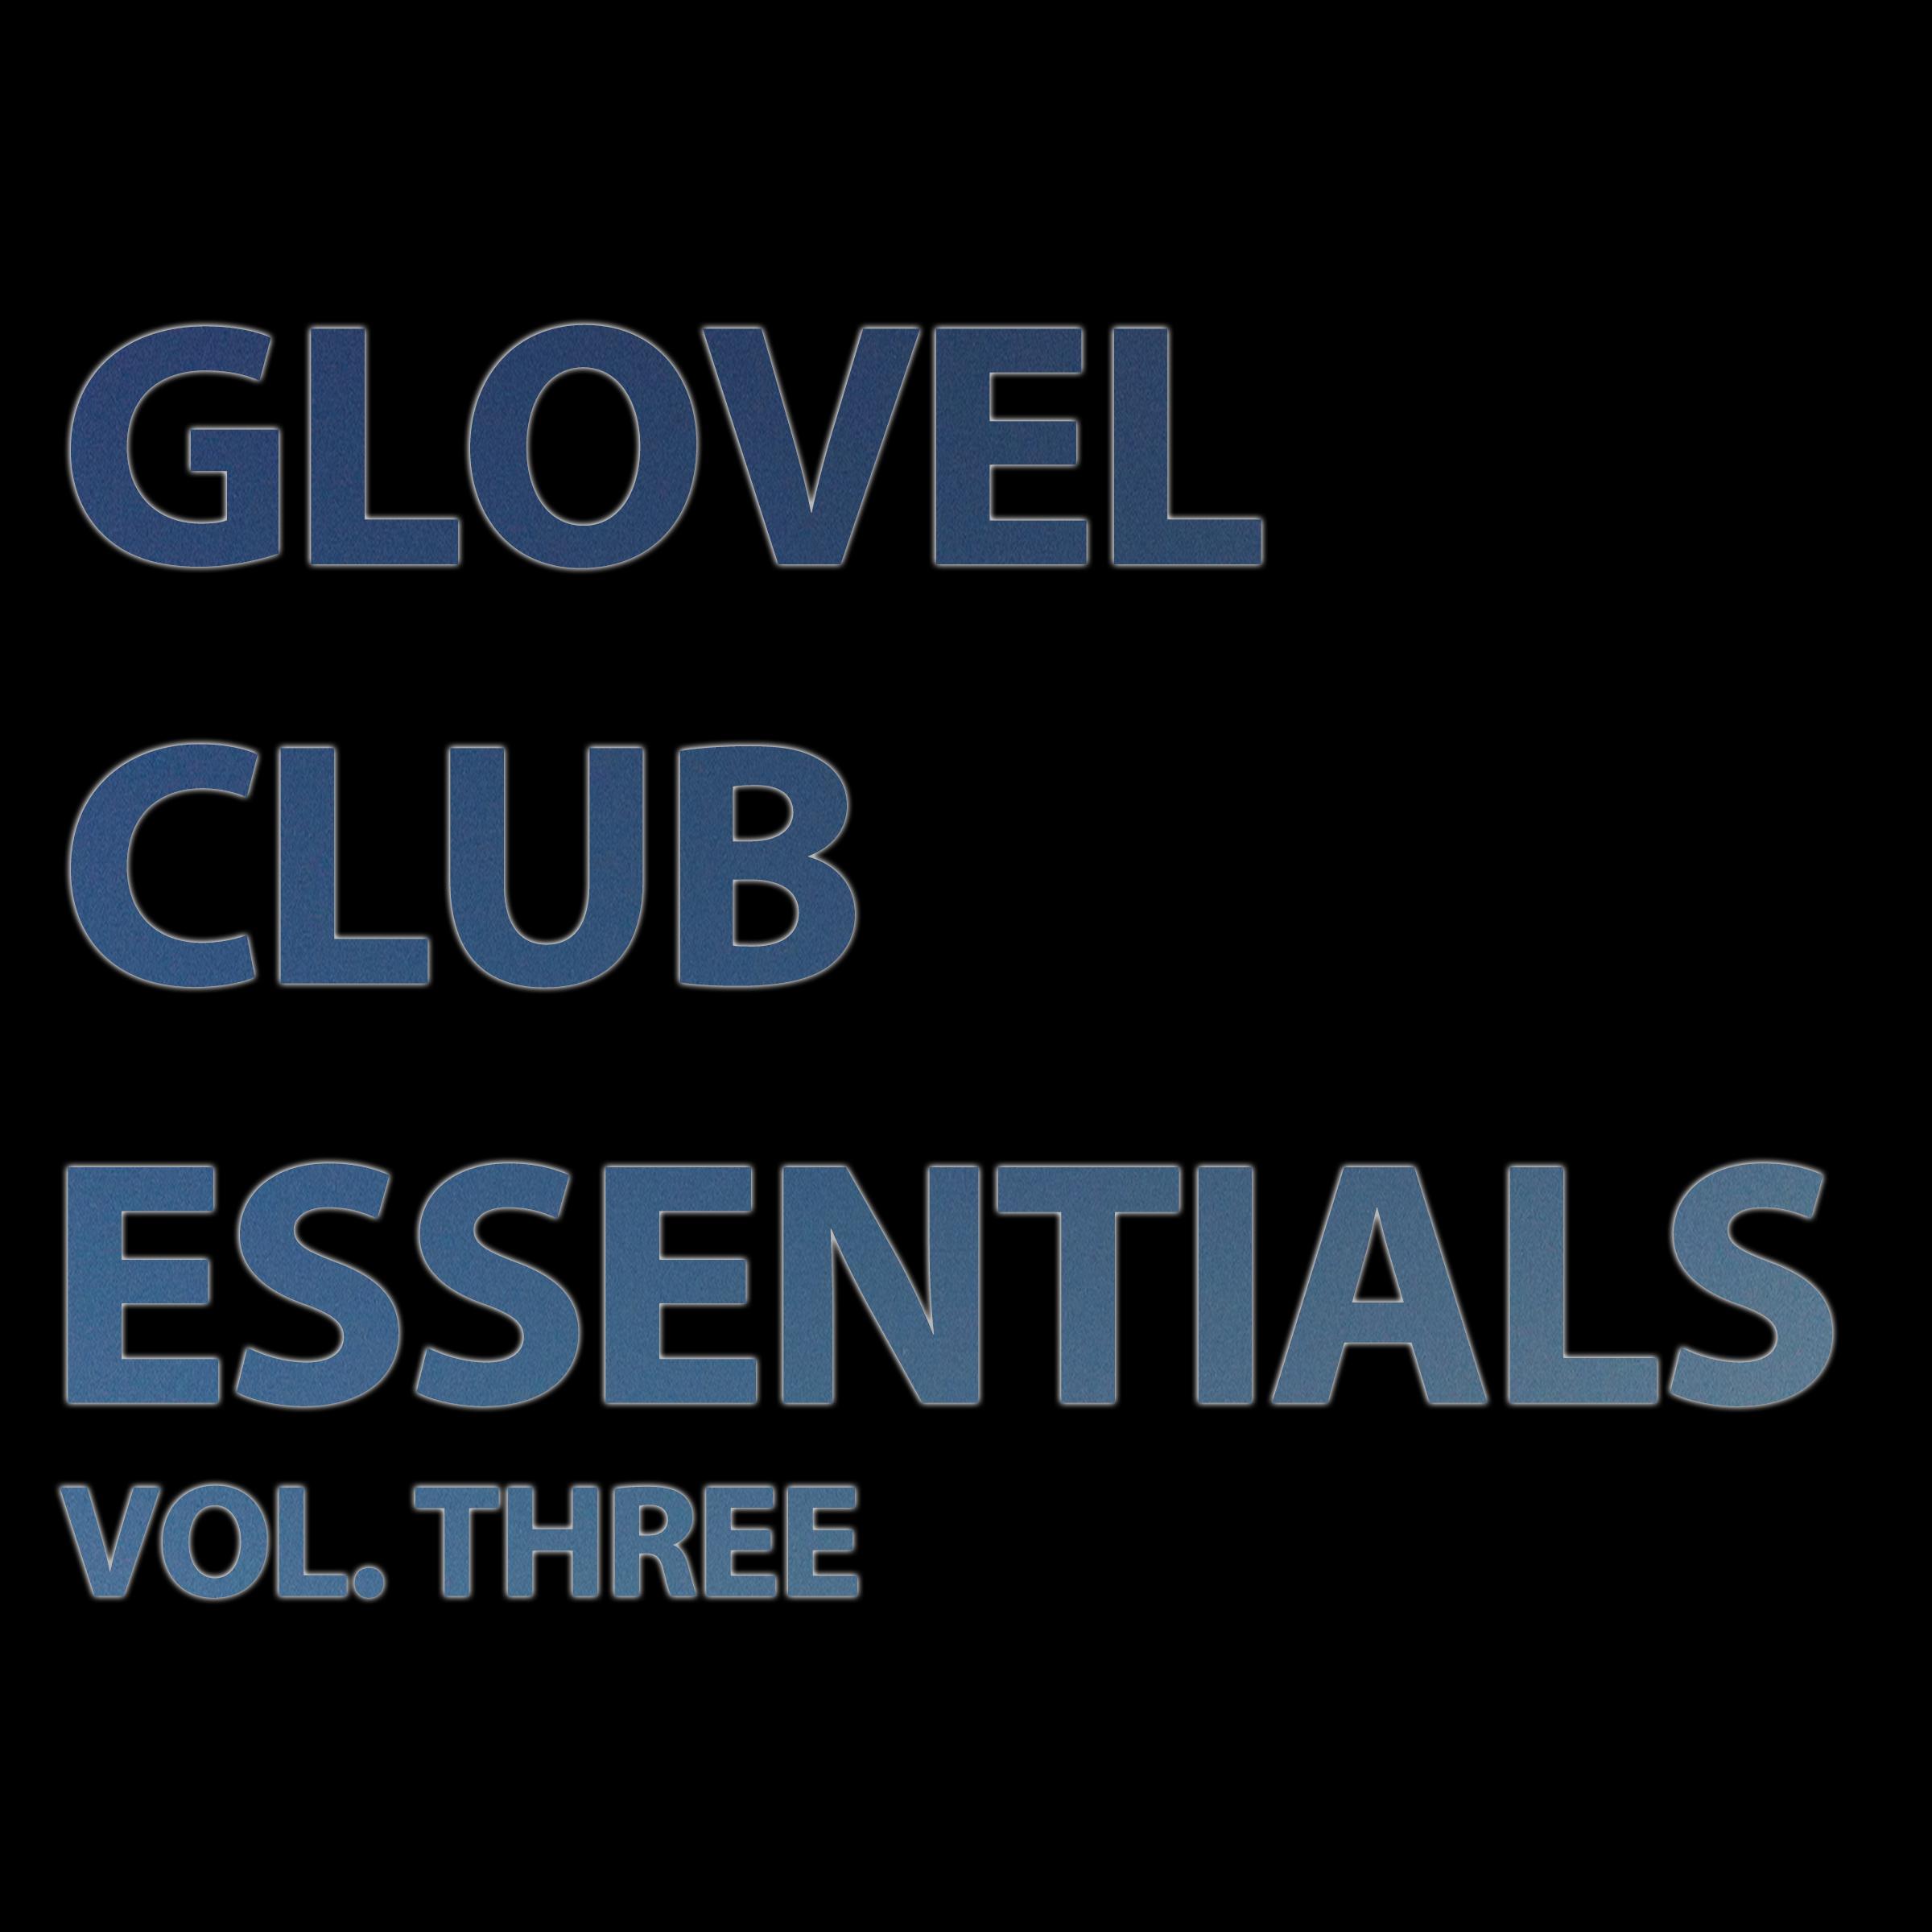 Glovel Club Essentials, Vol. Three